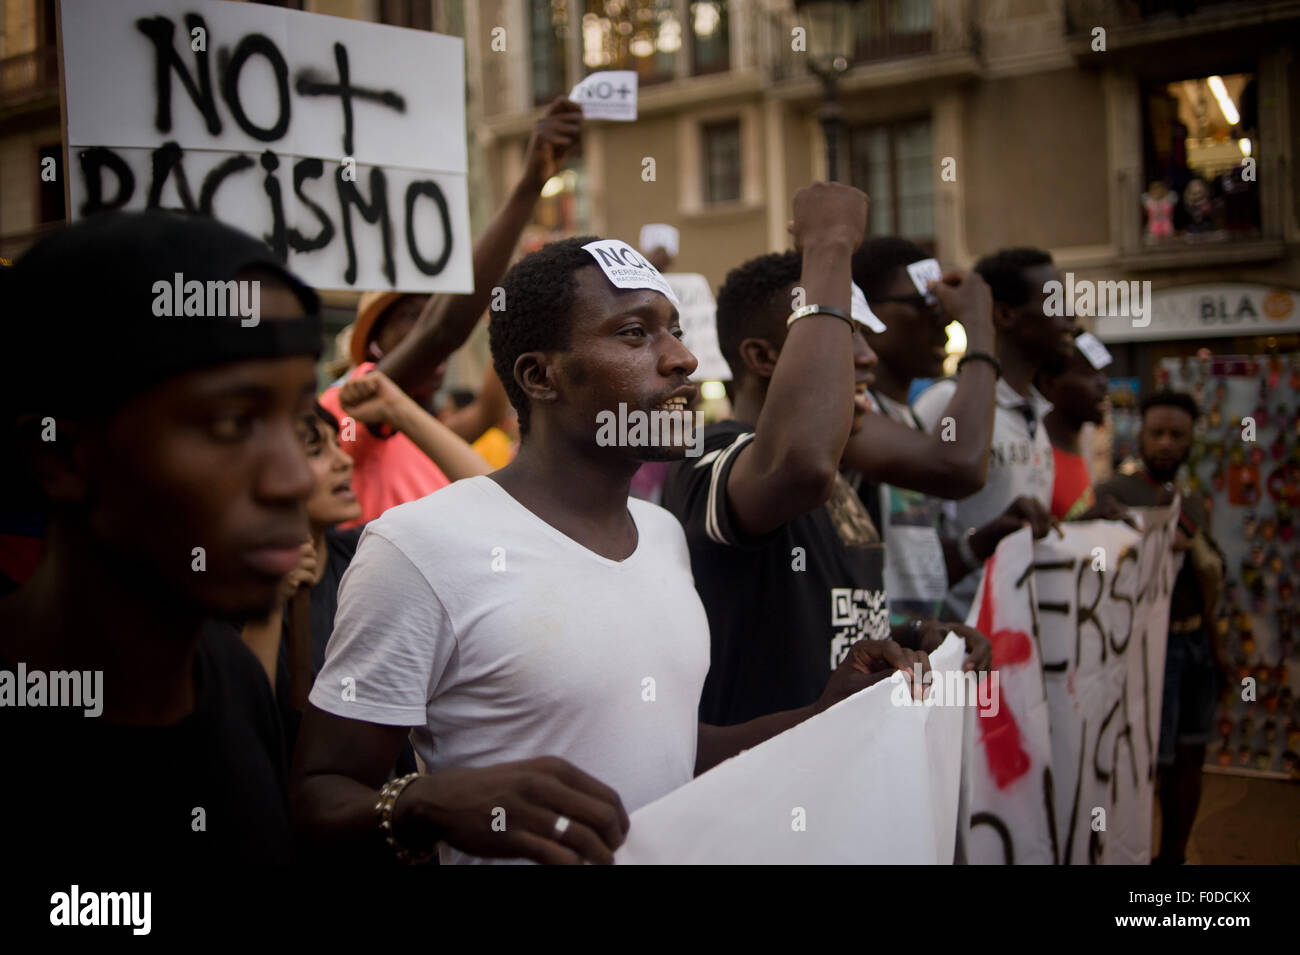 Les manifestants pendant une marche contre le racisme et la police à Barcelone (Espagne) le 11 août 2015. Banque D'Images